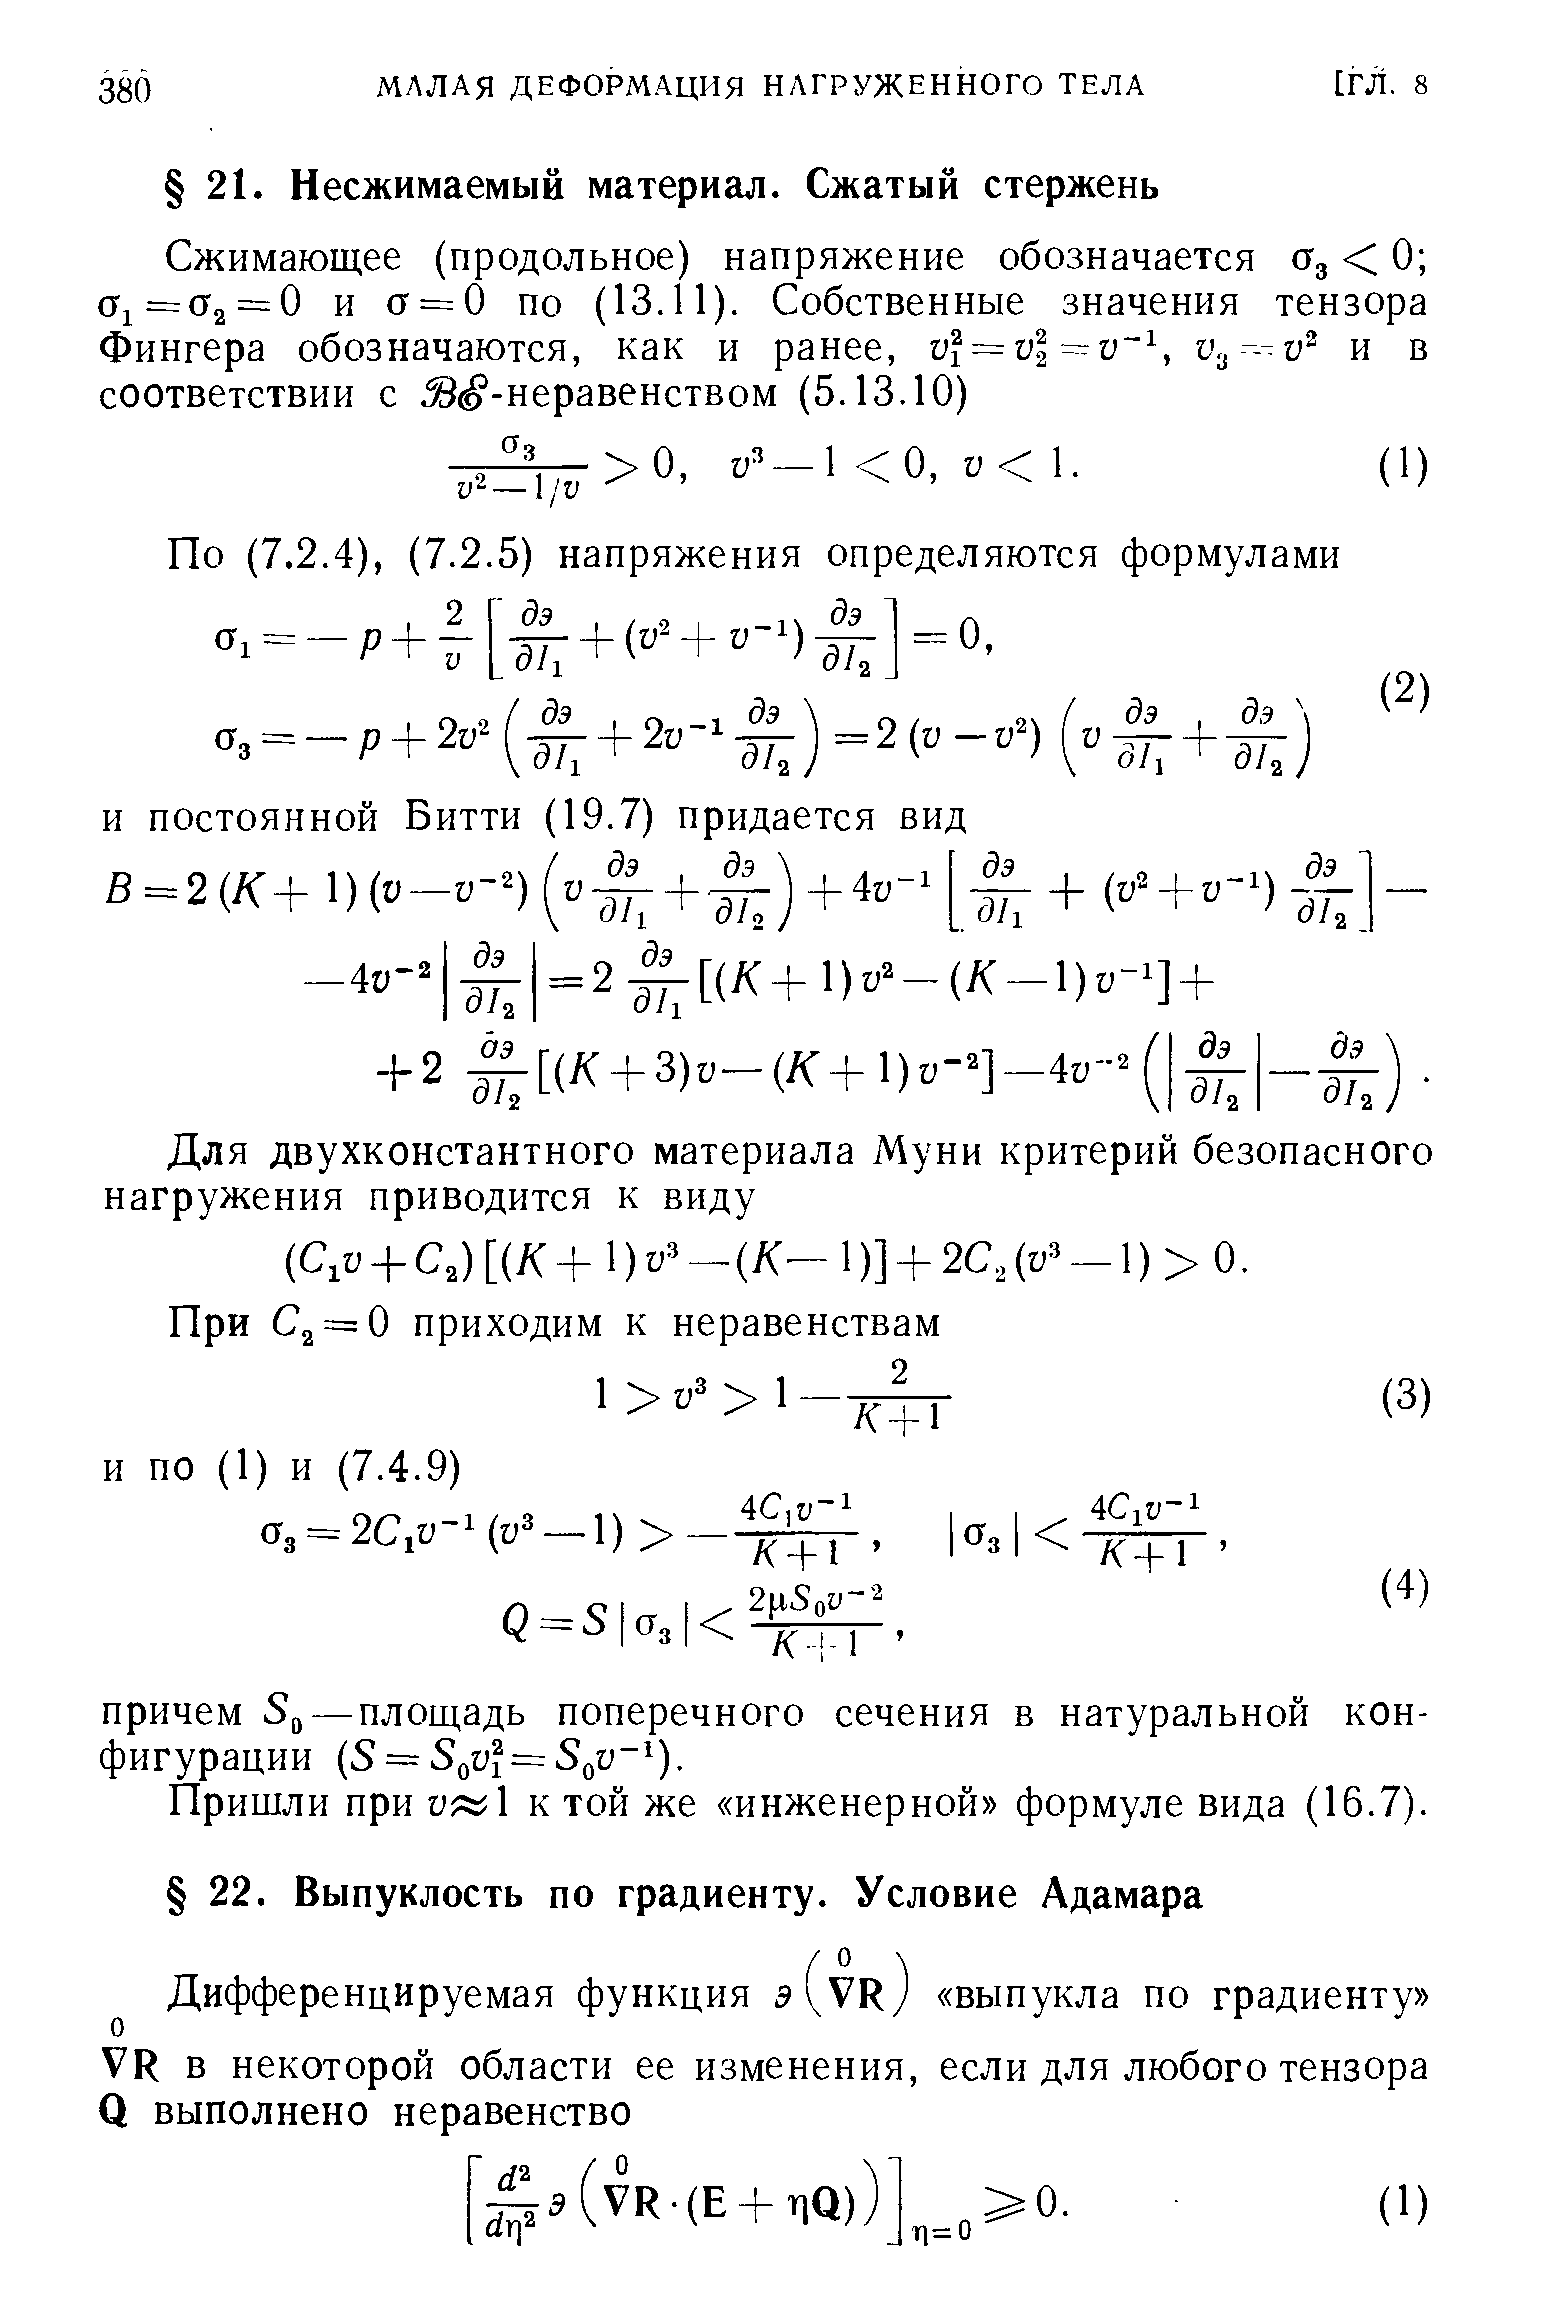 Пришли при и 1 к той же инженерной формуле вида (16.7).
